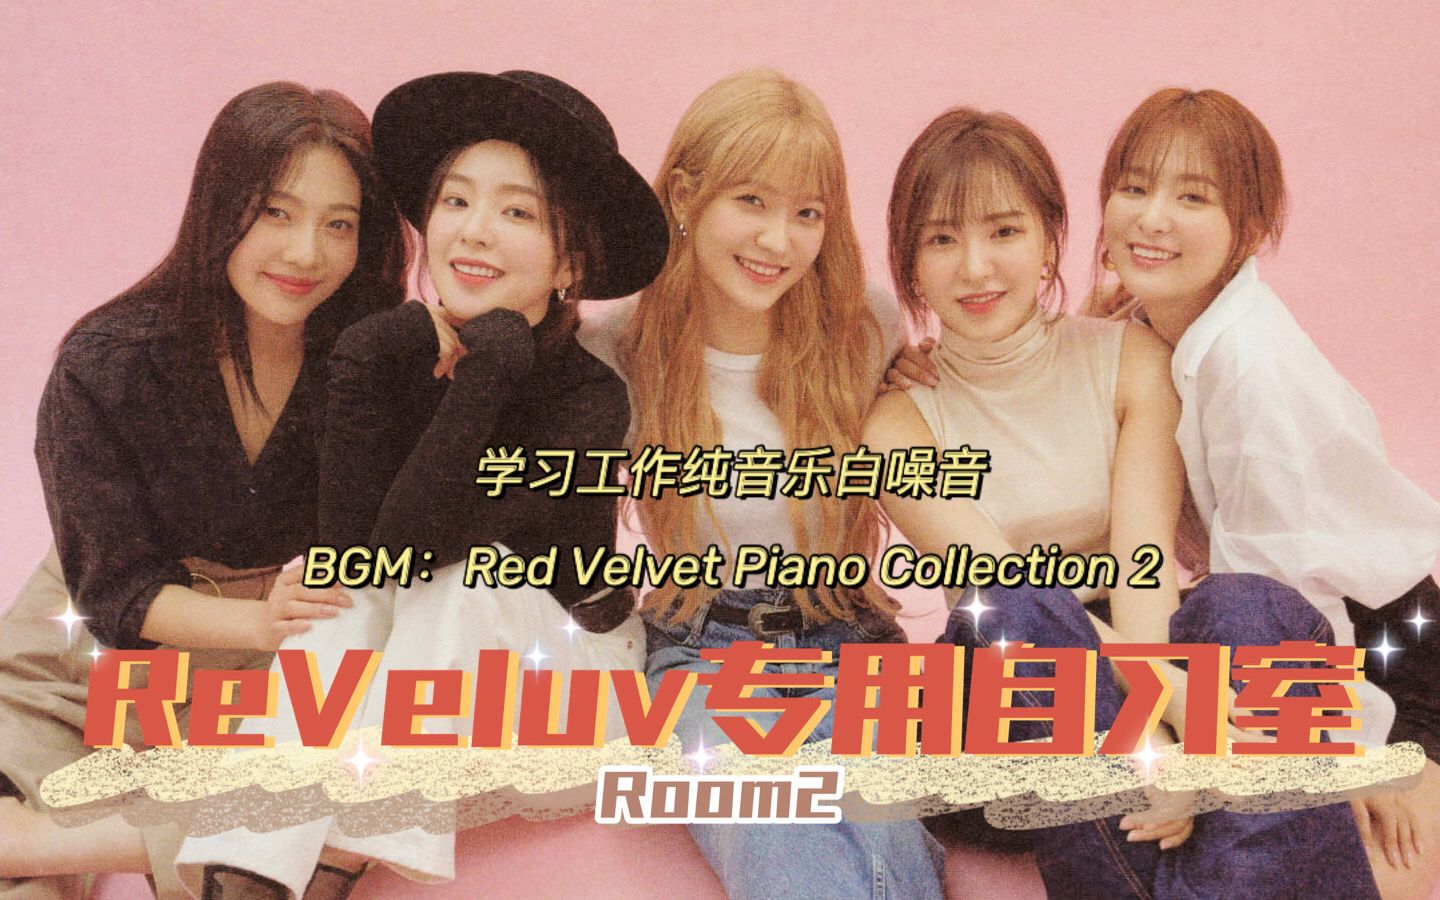 【追星自习室系列-Red Velvet合集】ROOM2 实时学习1h20m|好好学习，快乐追星|Red Velvet学习工作纯音乐白噪音